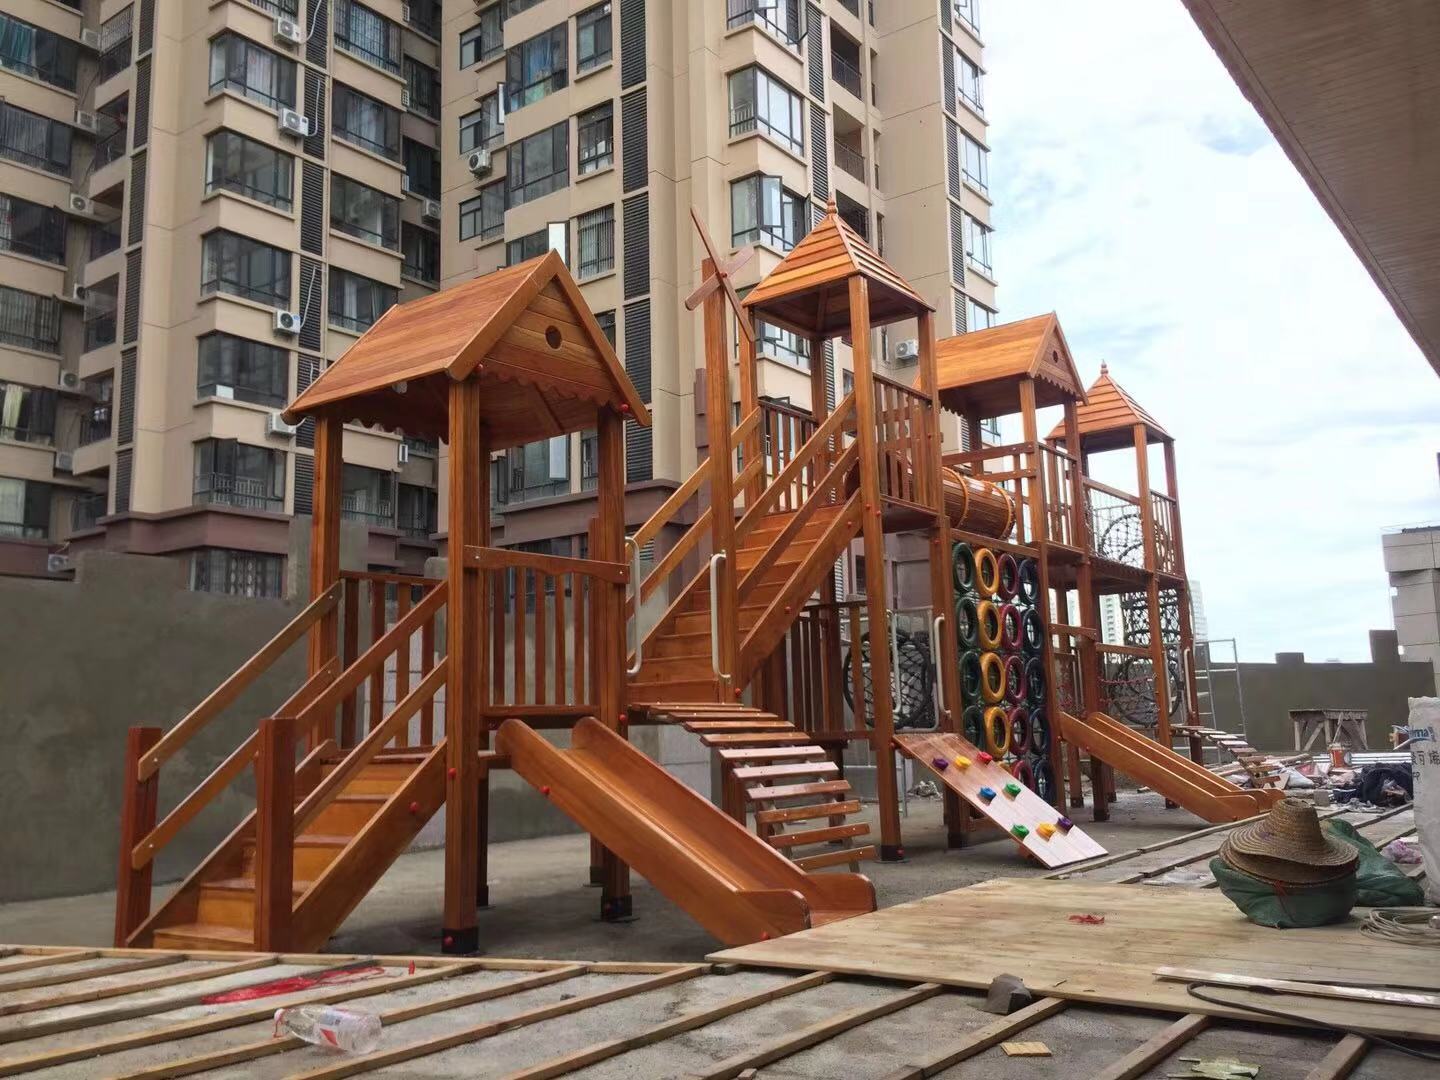 南宁公园拓展设备 小区攀爬玩具 幼儿园户外大型拓展训练组合